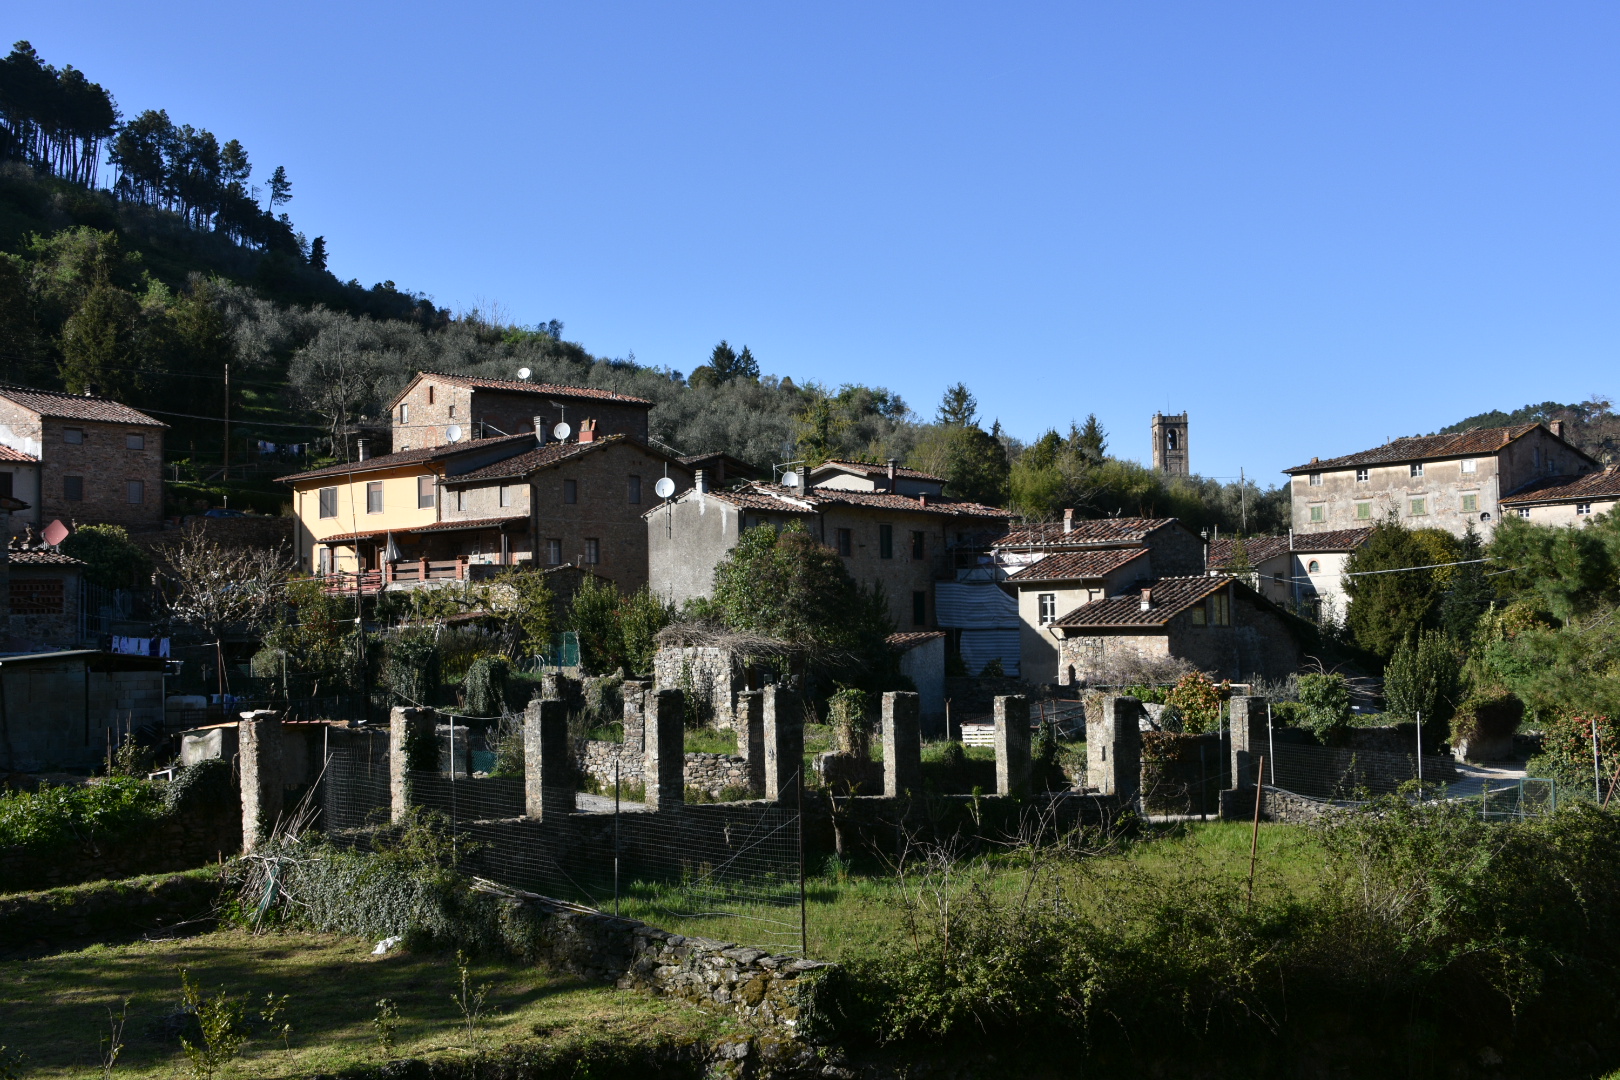 Borgo con case, muri medievali, verde della collina.